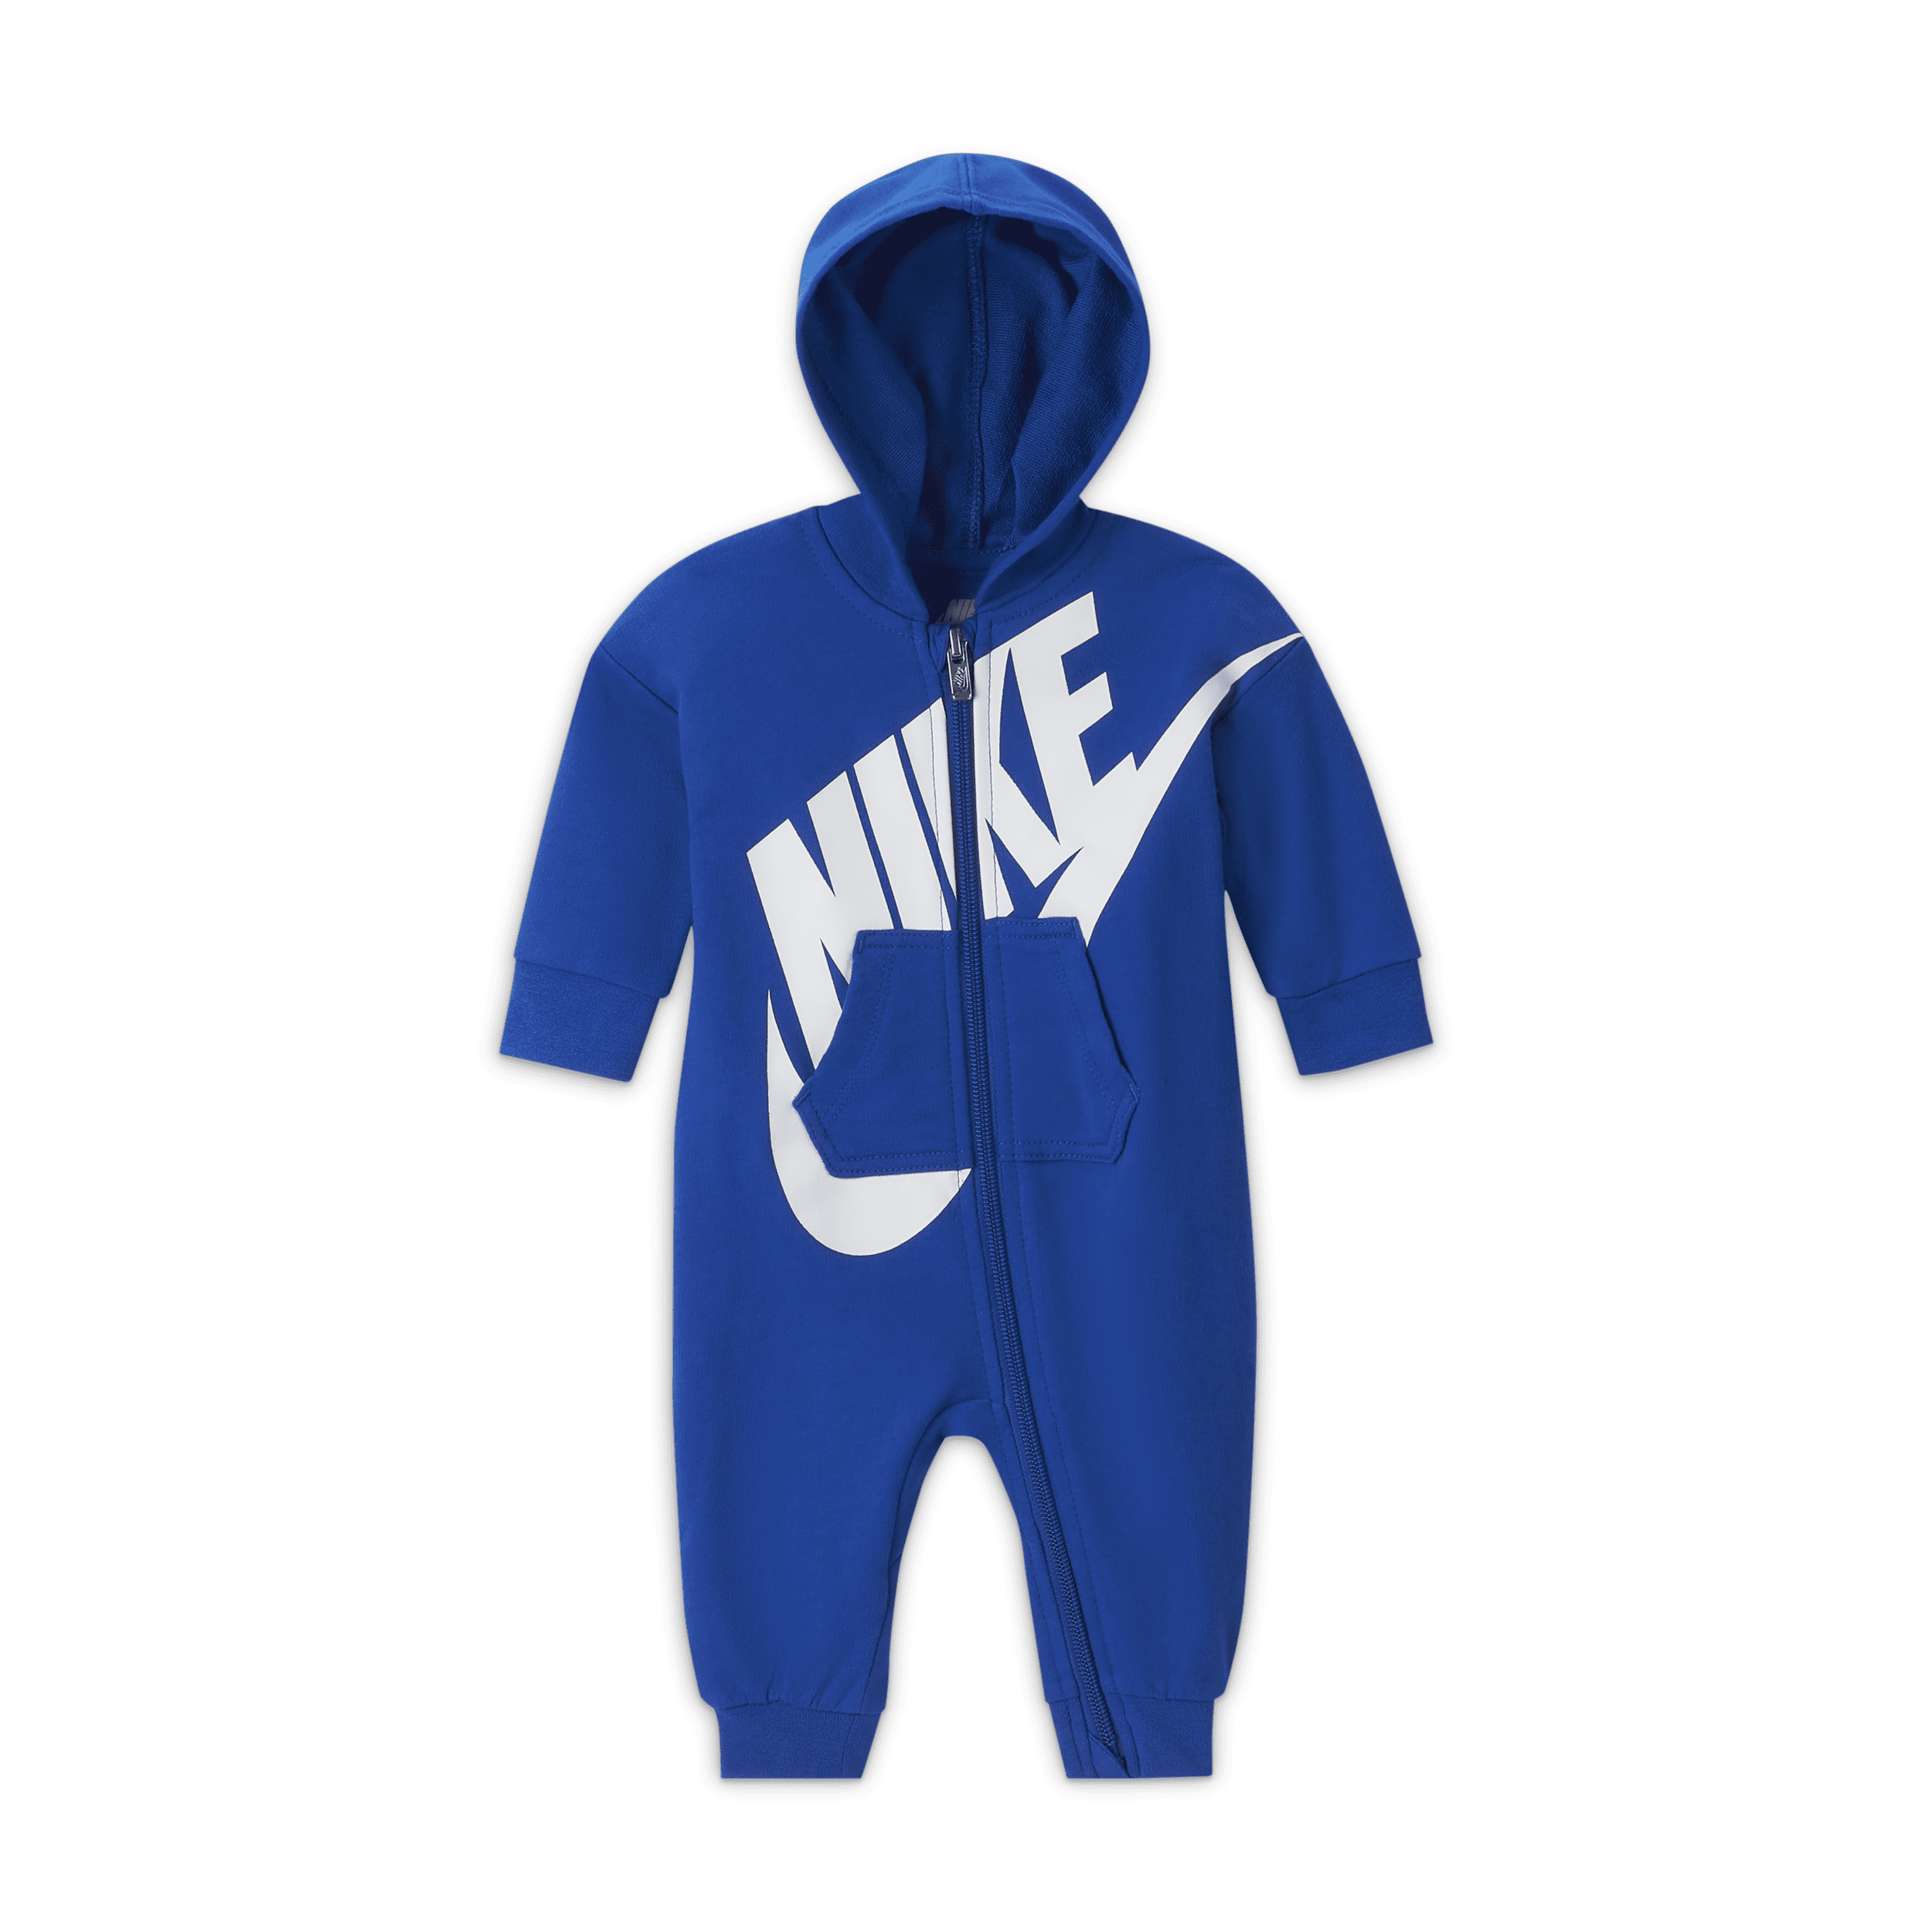 Tuta Nike – Bebè (0-12 mesi) - Blu